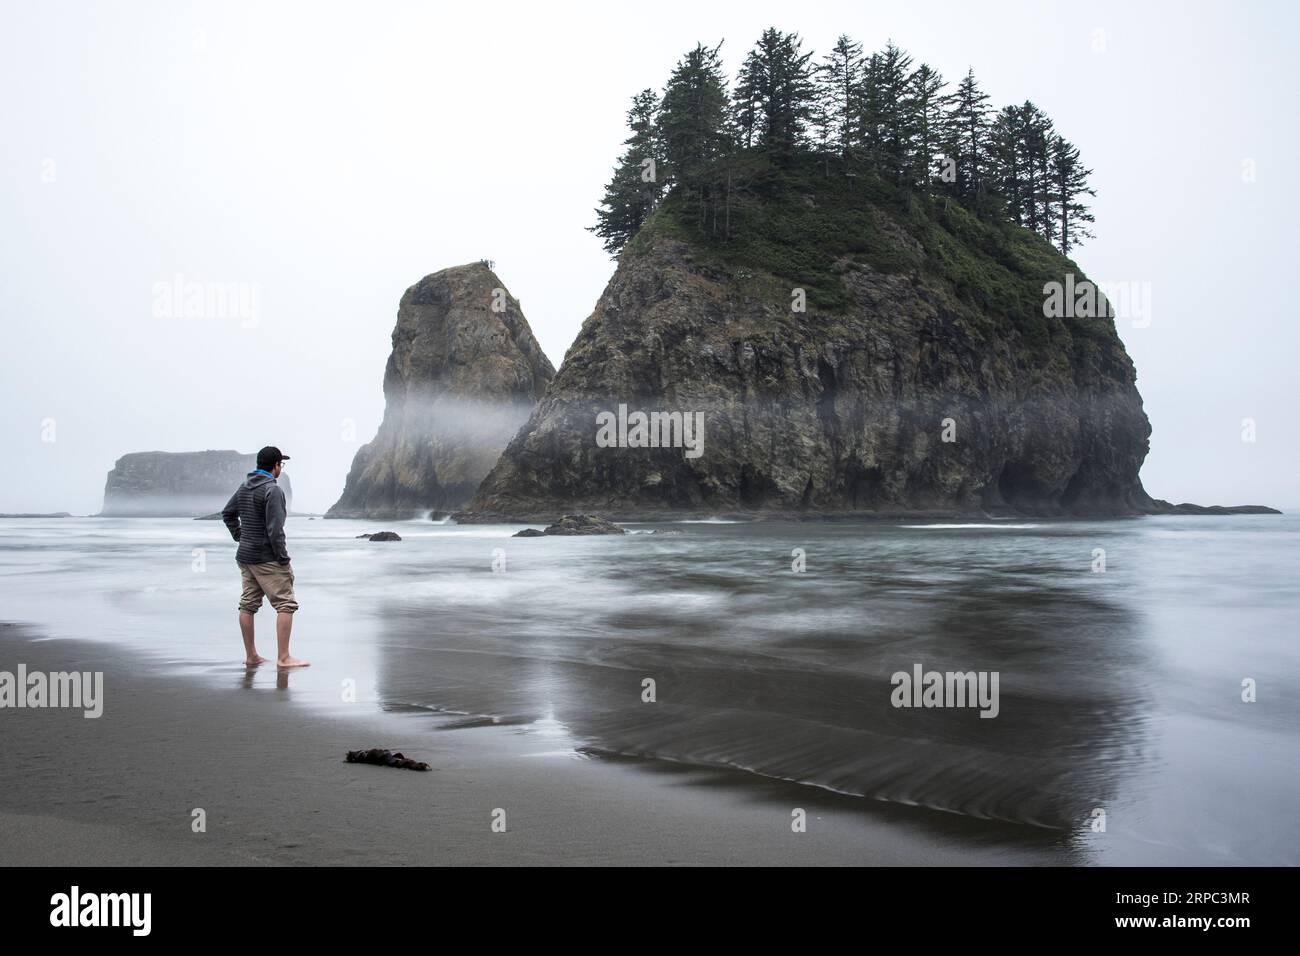 Uomo sulla spiaggia che guarda la piccola isola rocciosa con gli alberi, Second Beach, la Push, Washington State, USA Foto Stock